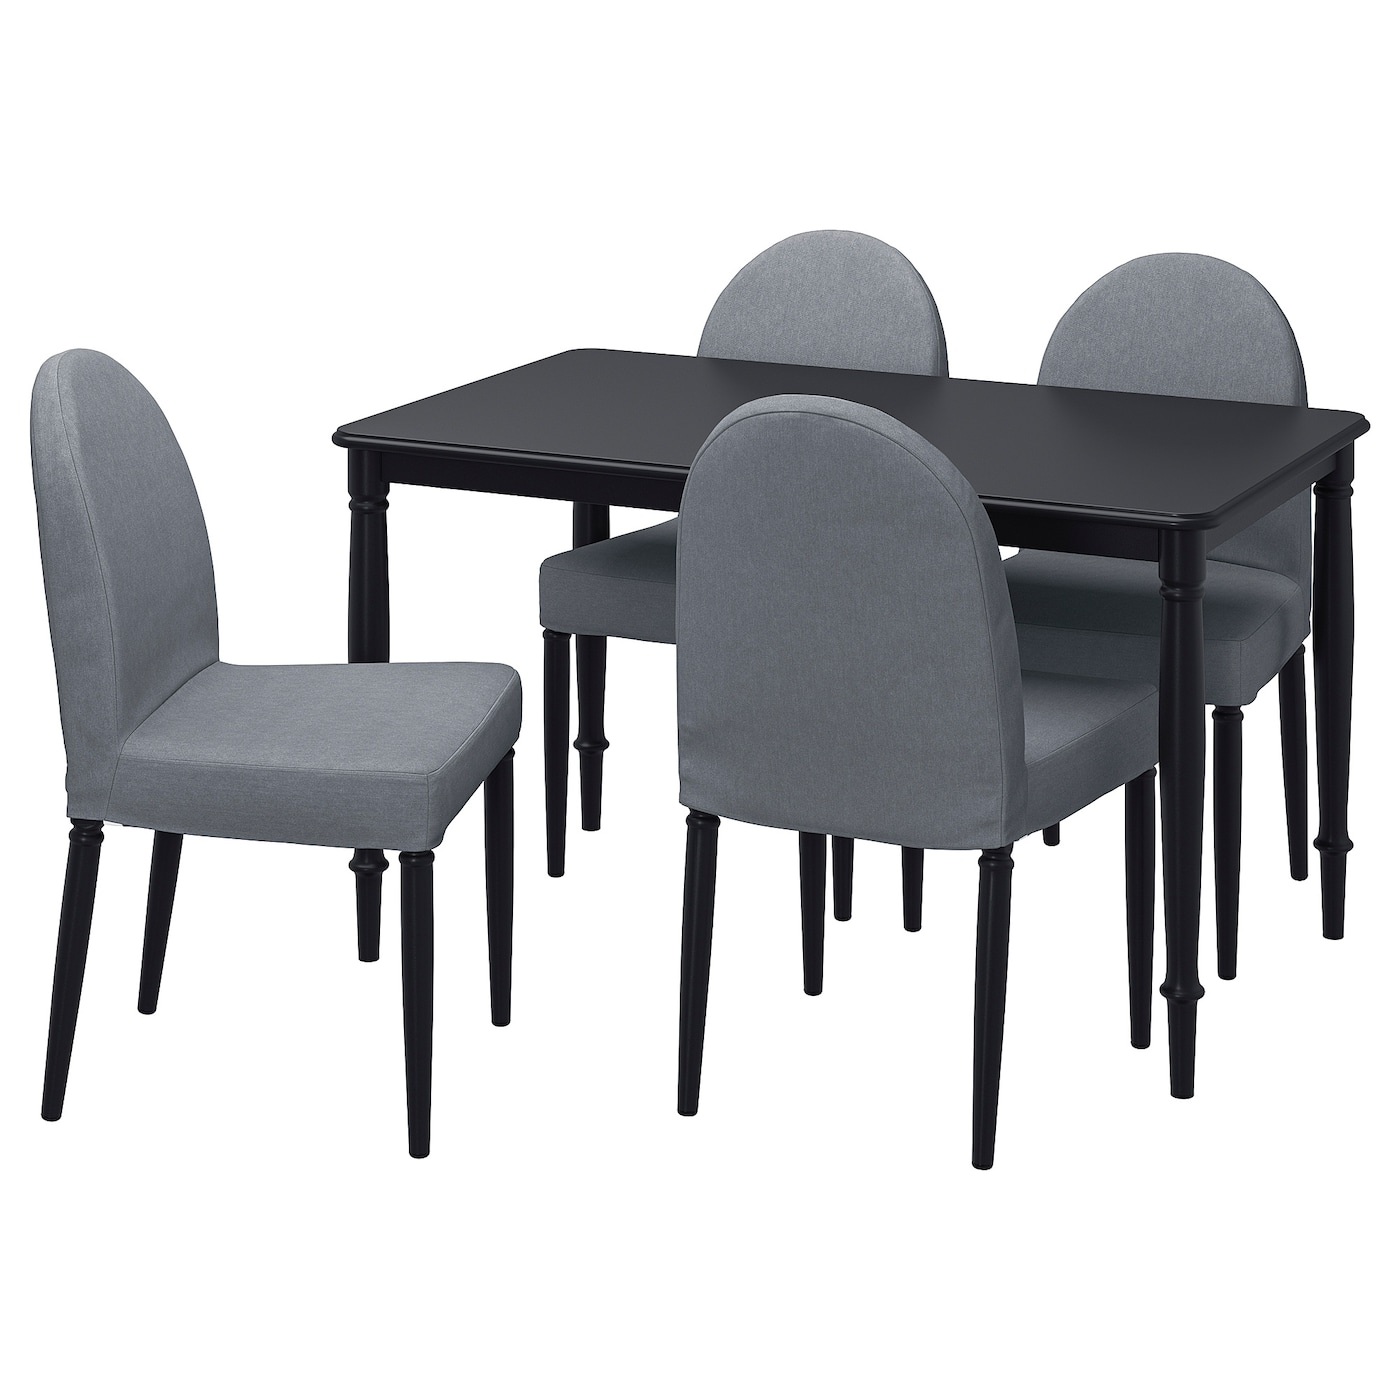 Стол и 4 стула - DANDERYD / DANDERYD IKEA/ ДАНДЕРИД ИКЕА, 130х80х75 см, черный/серый